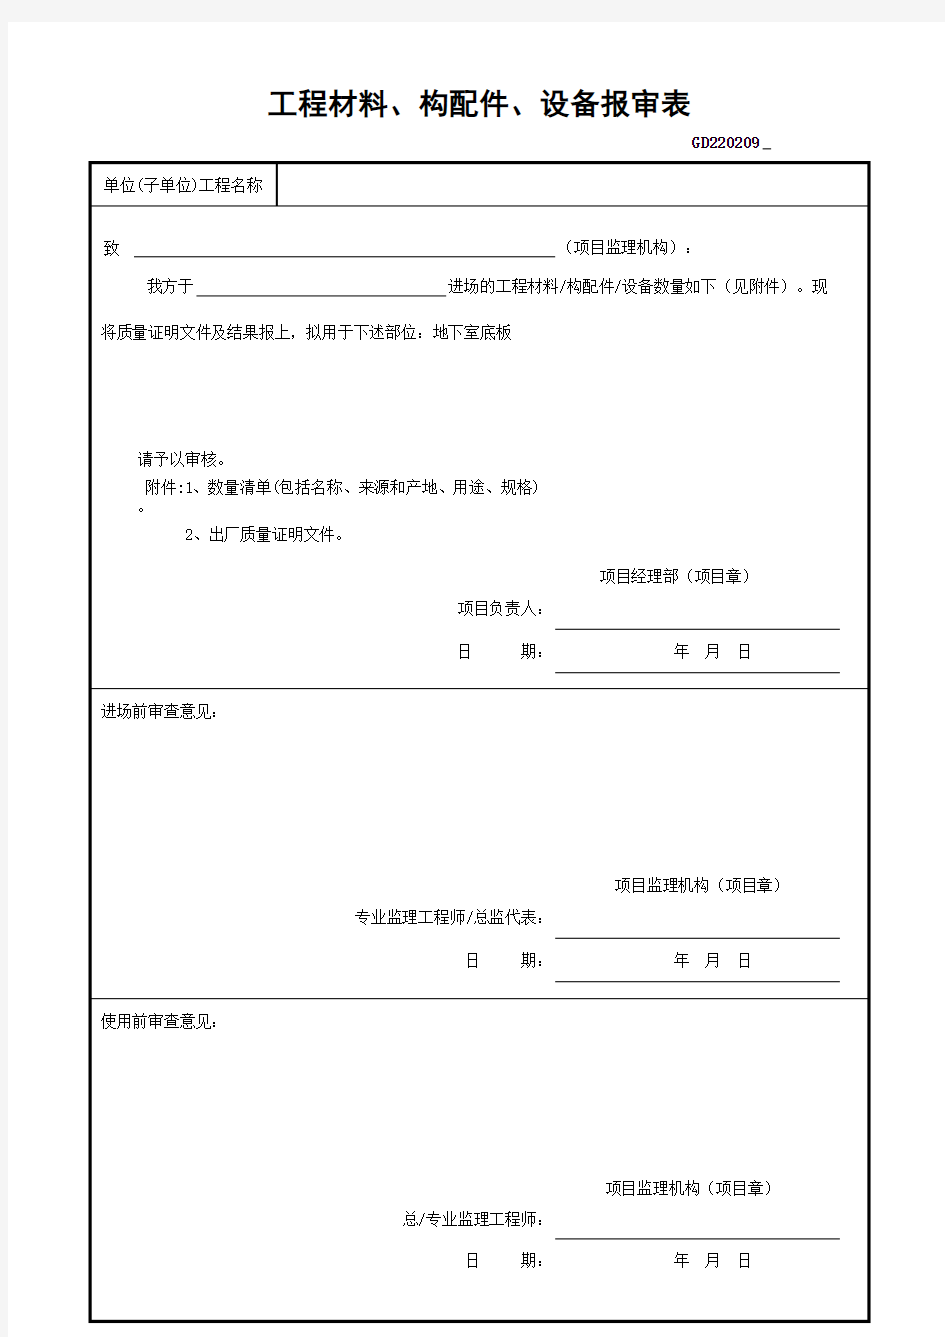 工程材料 构配件 设备报审表 广东省